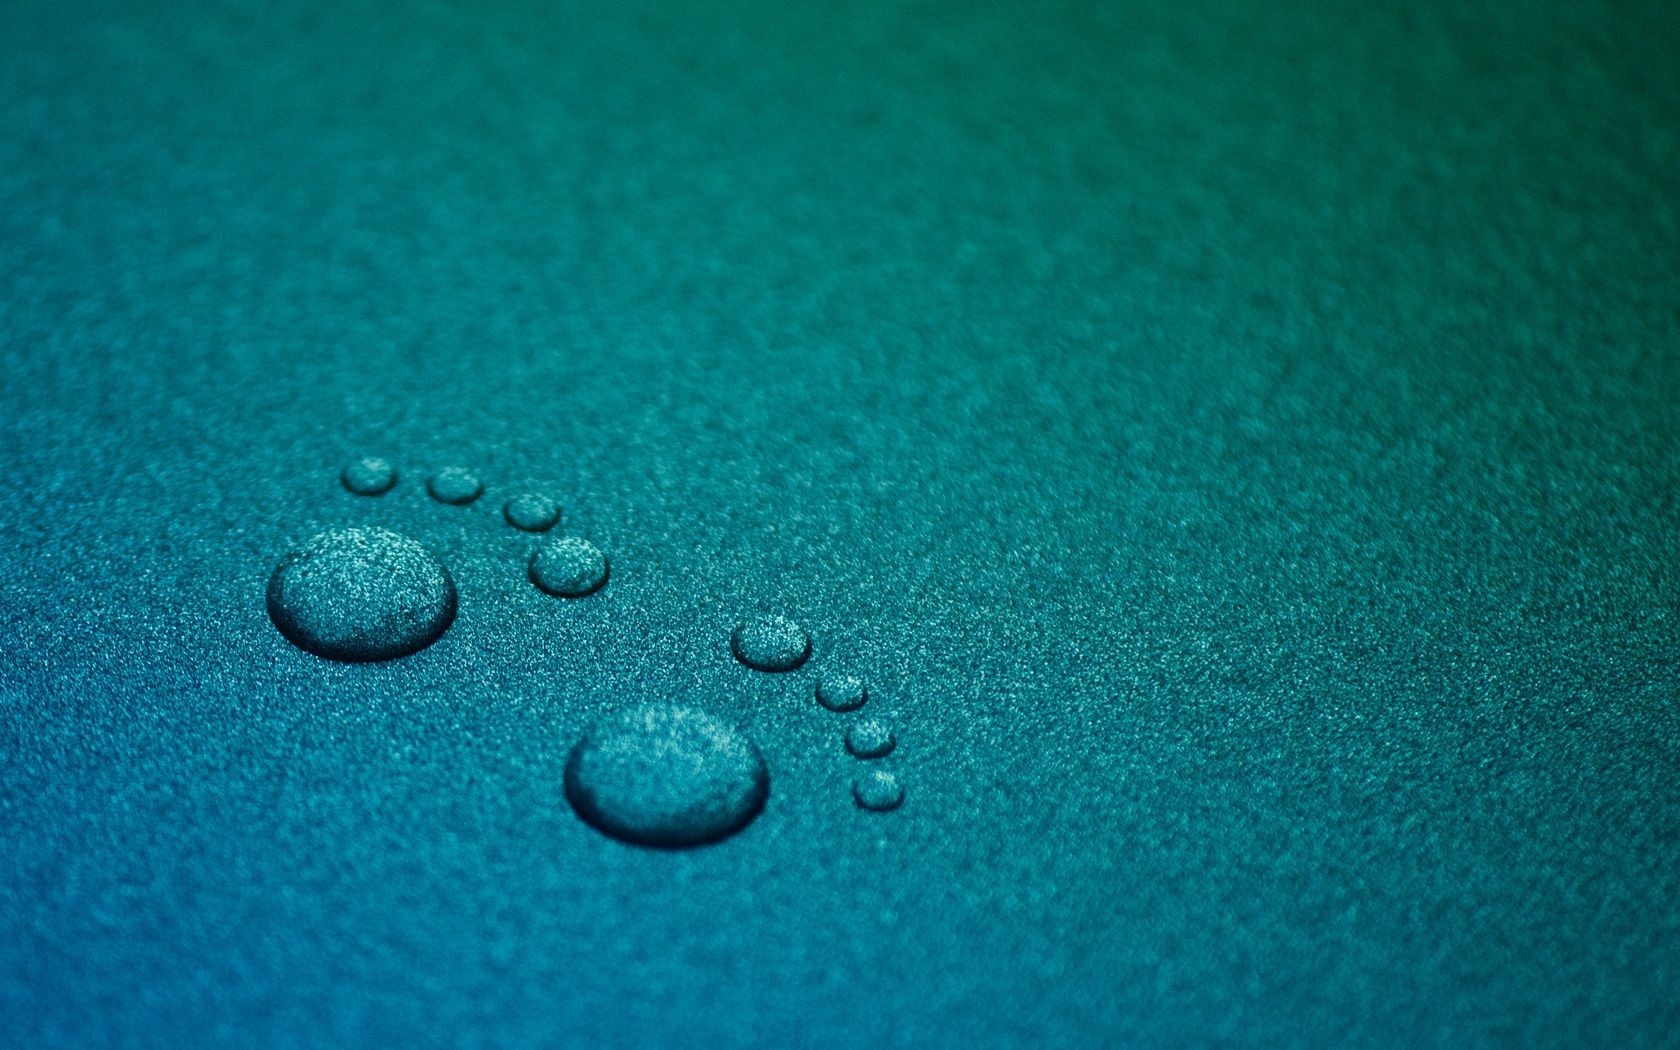 предметы рабочего стола дождь падение текстура росы капли аннотация крупным планом цвет мокрый отражение